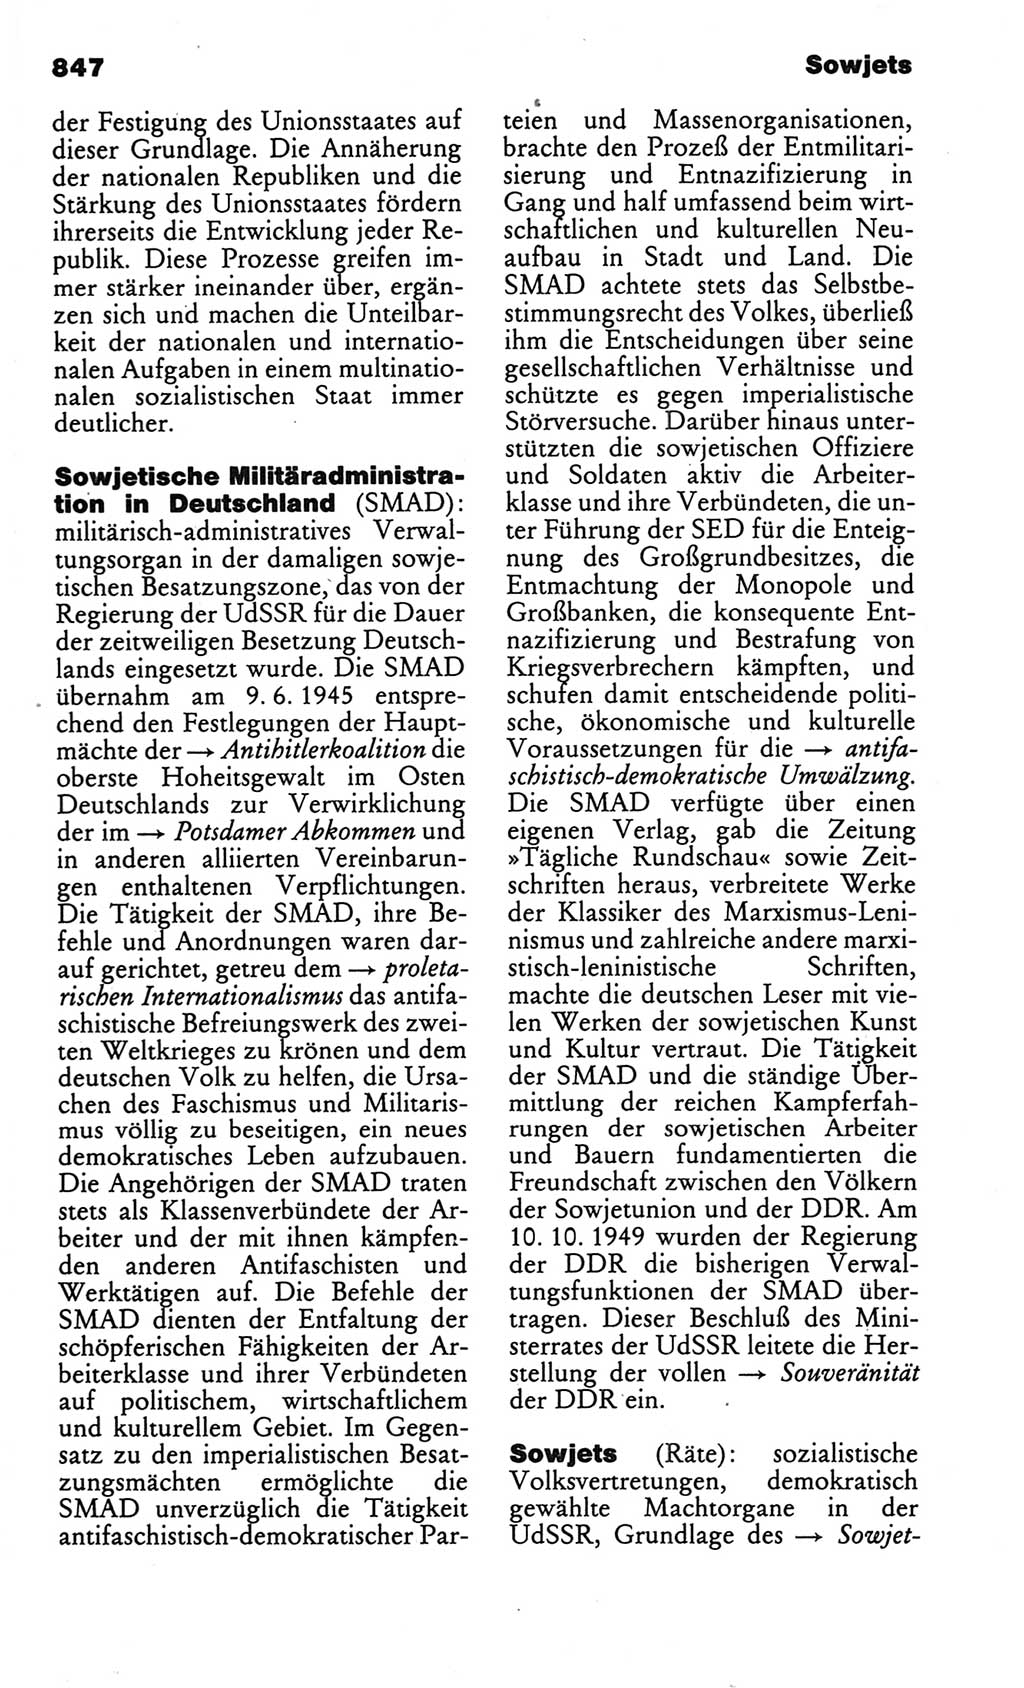 Kleines politisches Wörterbuch [Deutsche Demokratische Republik (DDR)] 1986, Seite 847 (Kl. pol. Wb. DDR 1986, S. 847)